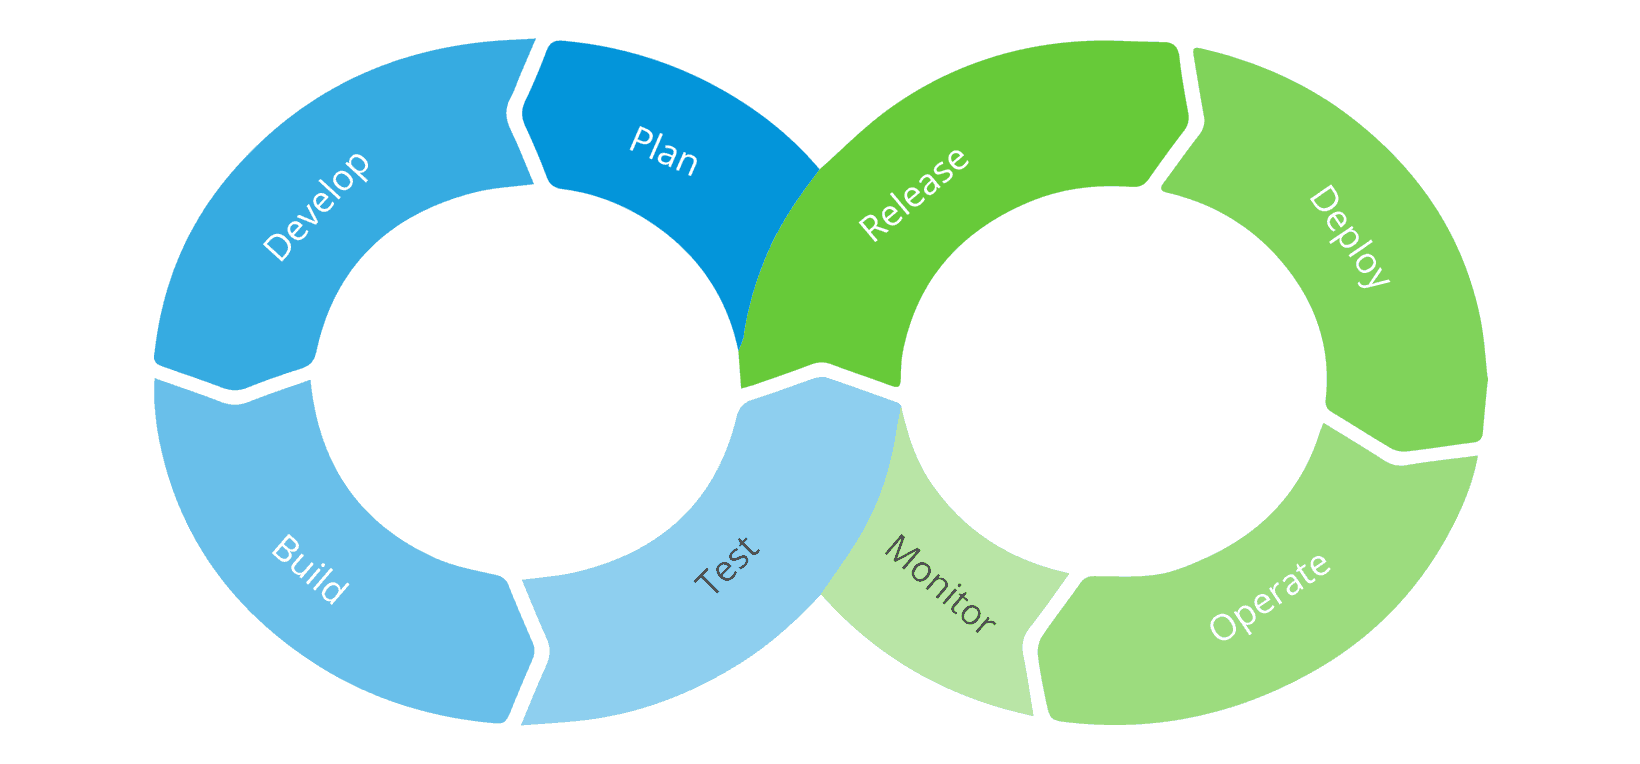 The DevOps Cycle Diagram